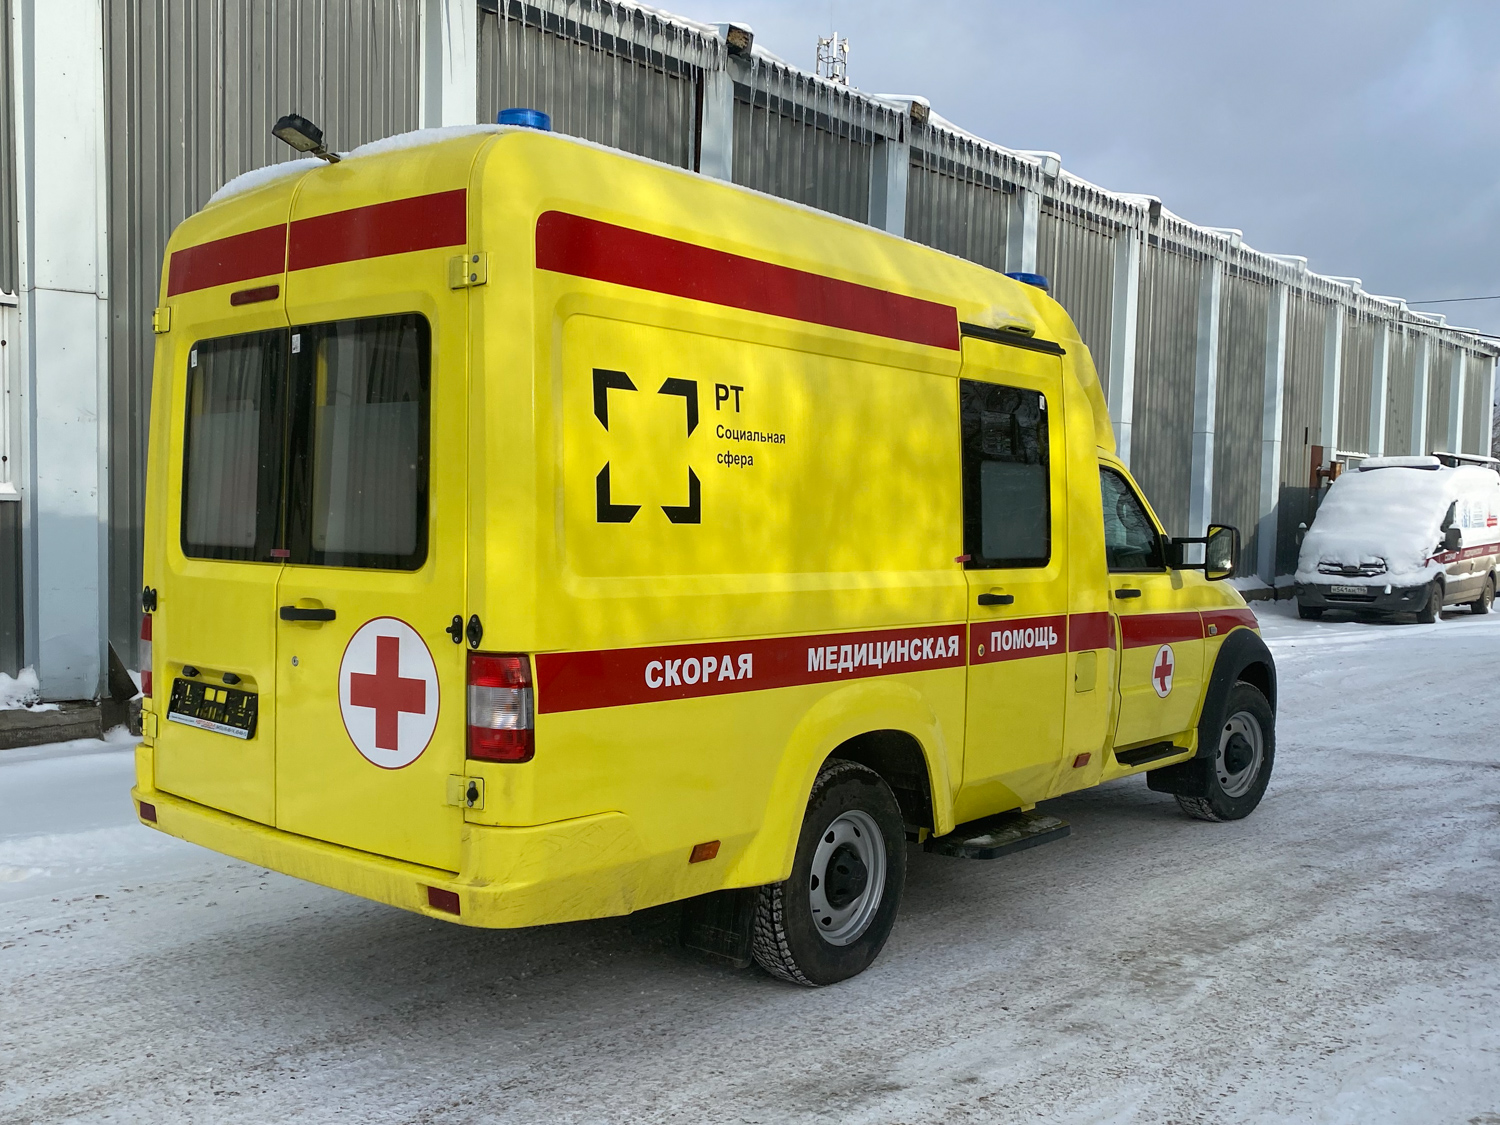 «РТ-Социальная сфера» поставила в Свердловскую область партию карет скорой помощи 